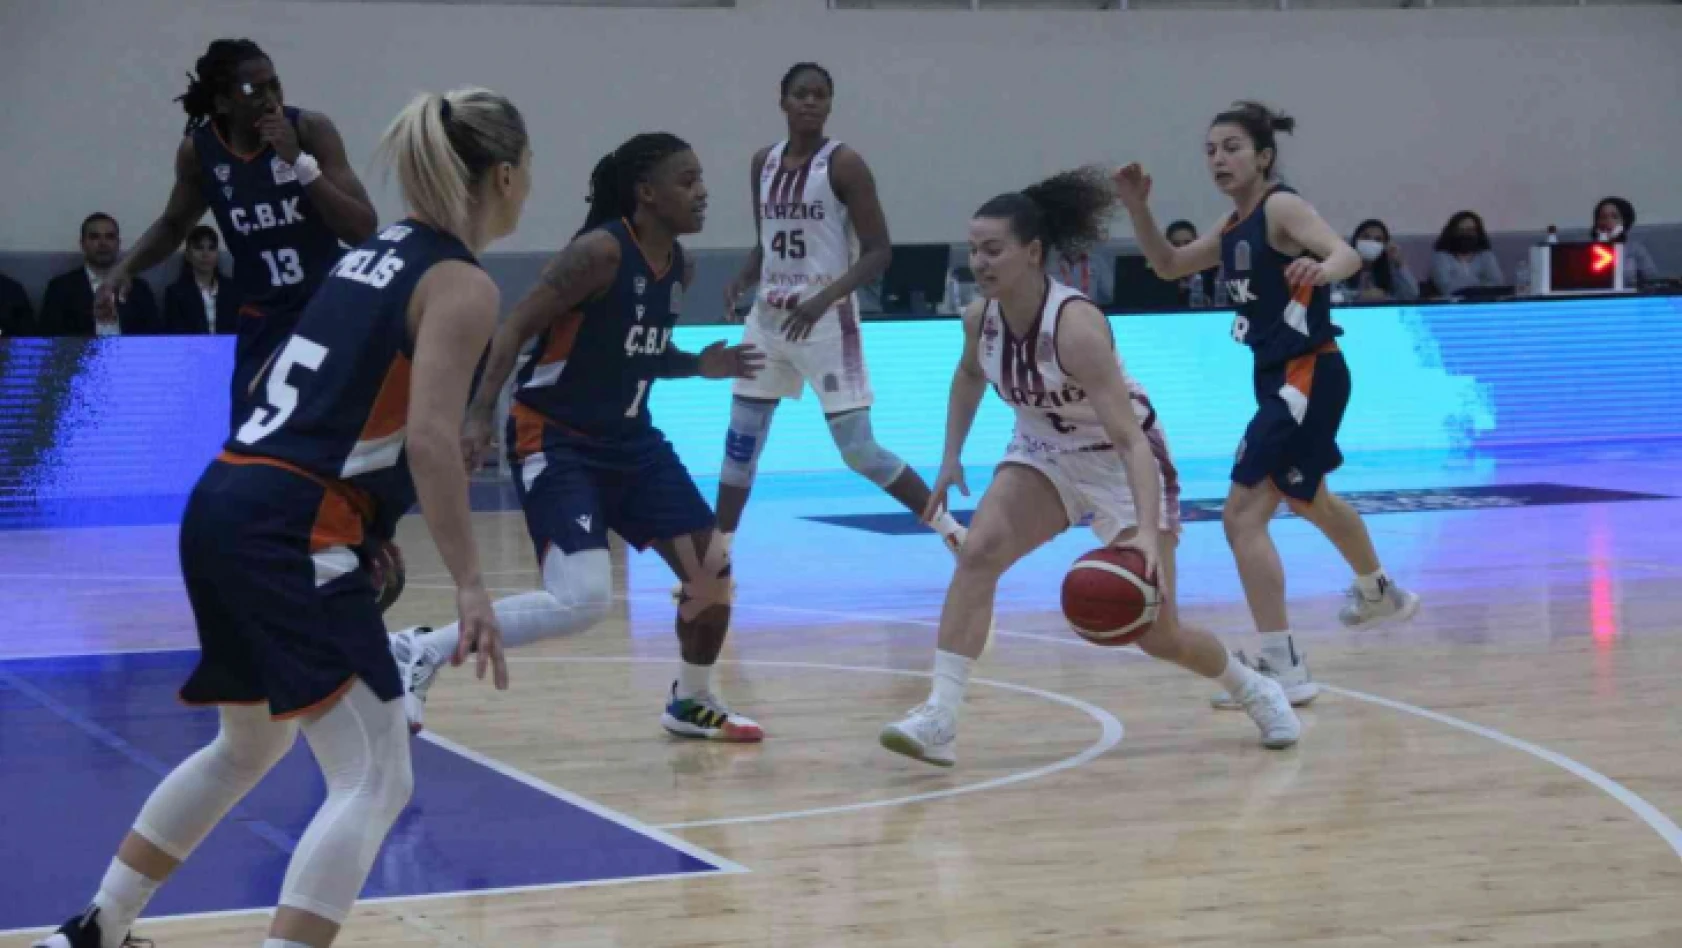 Kadınlar Basketbol Süper Ligi: Elazığ İl Özel İdare: 53 - ÇBK Mersin Yenişehir Belediye: 81